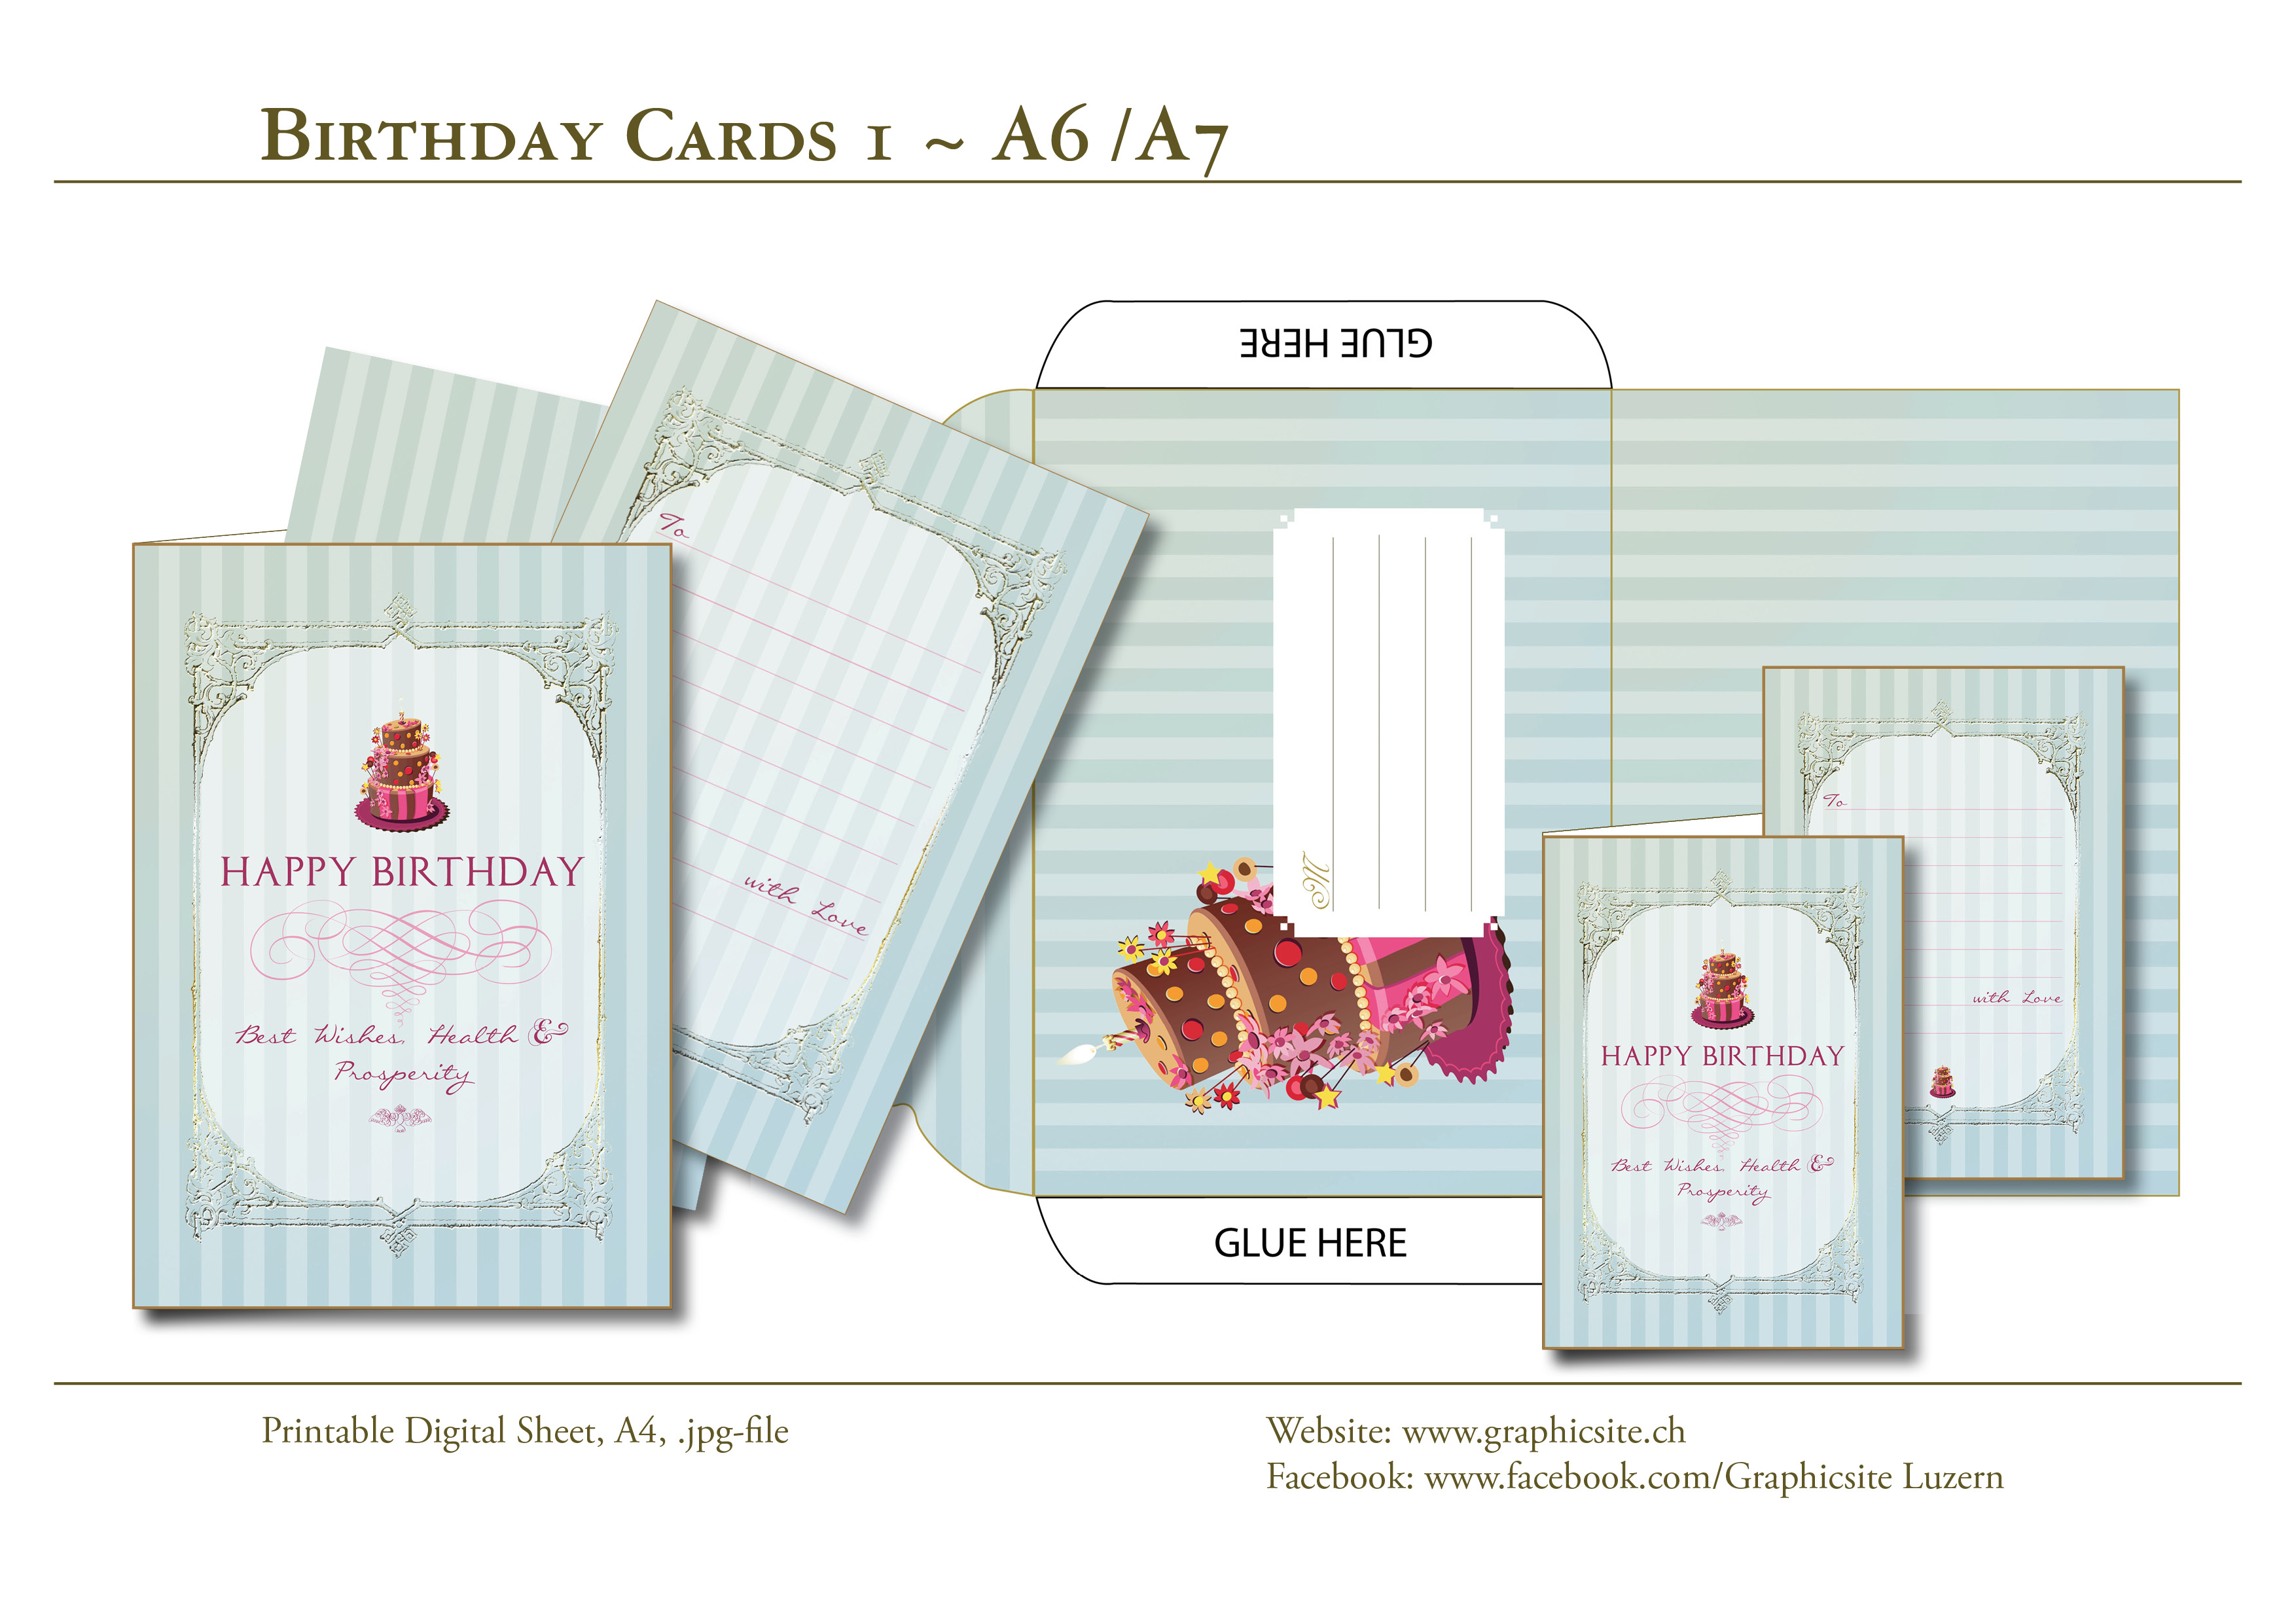 Karten selber drucken - Geburtstagskarten - Grusskarten - Kuvert - Papeterie - Grafiker Luzern, Graphic Design Luzern - Schweiz 